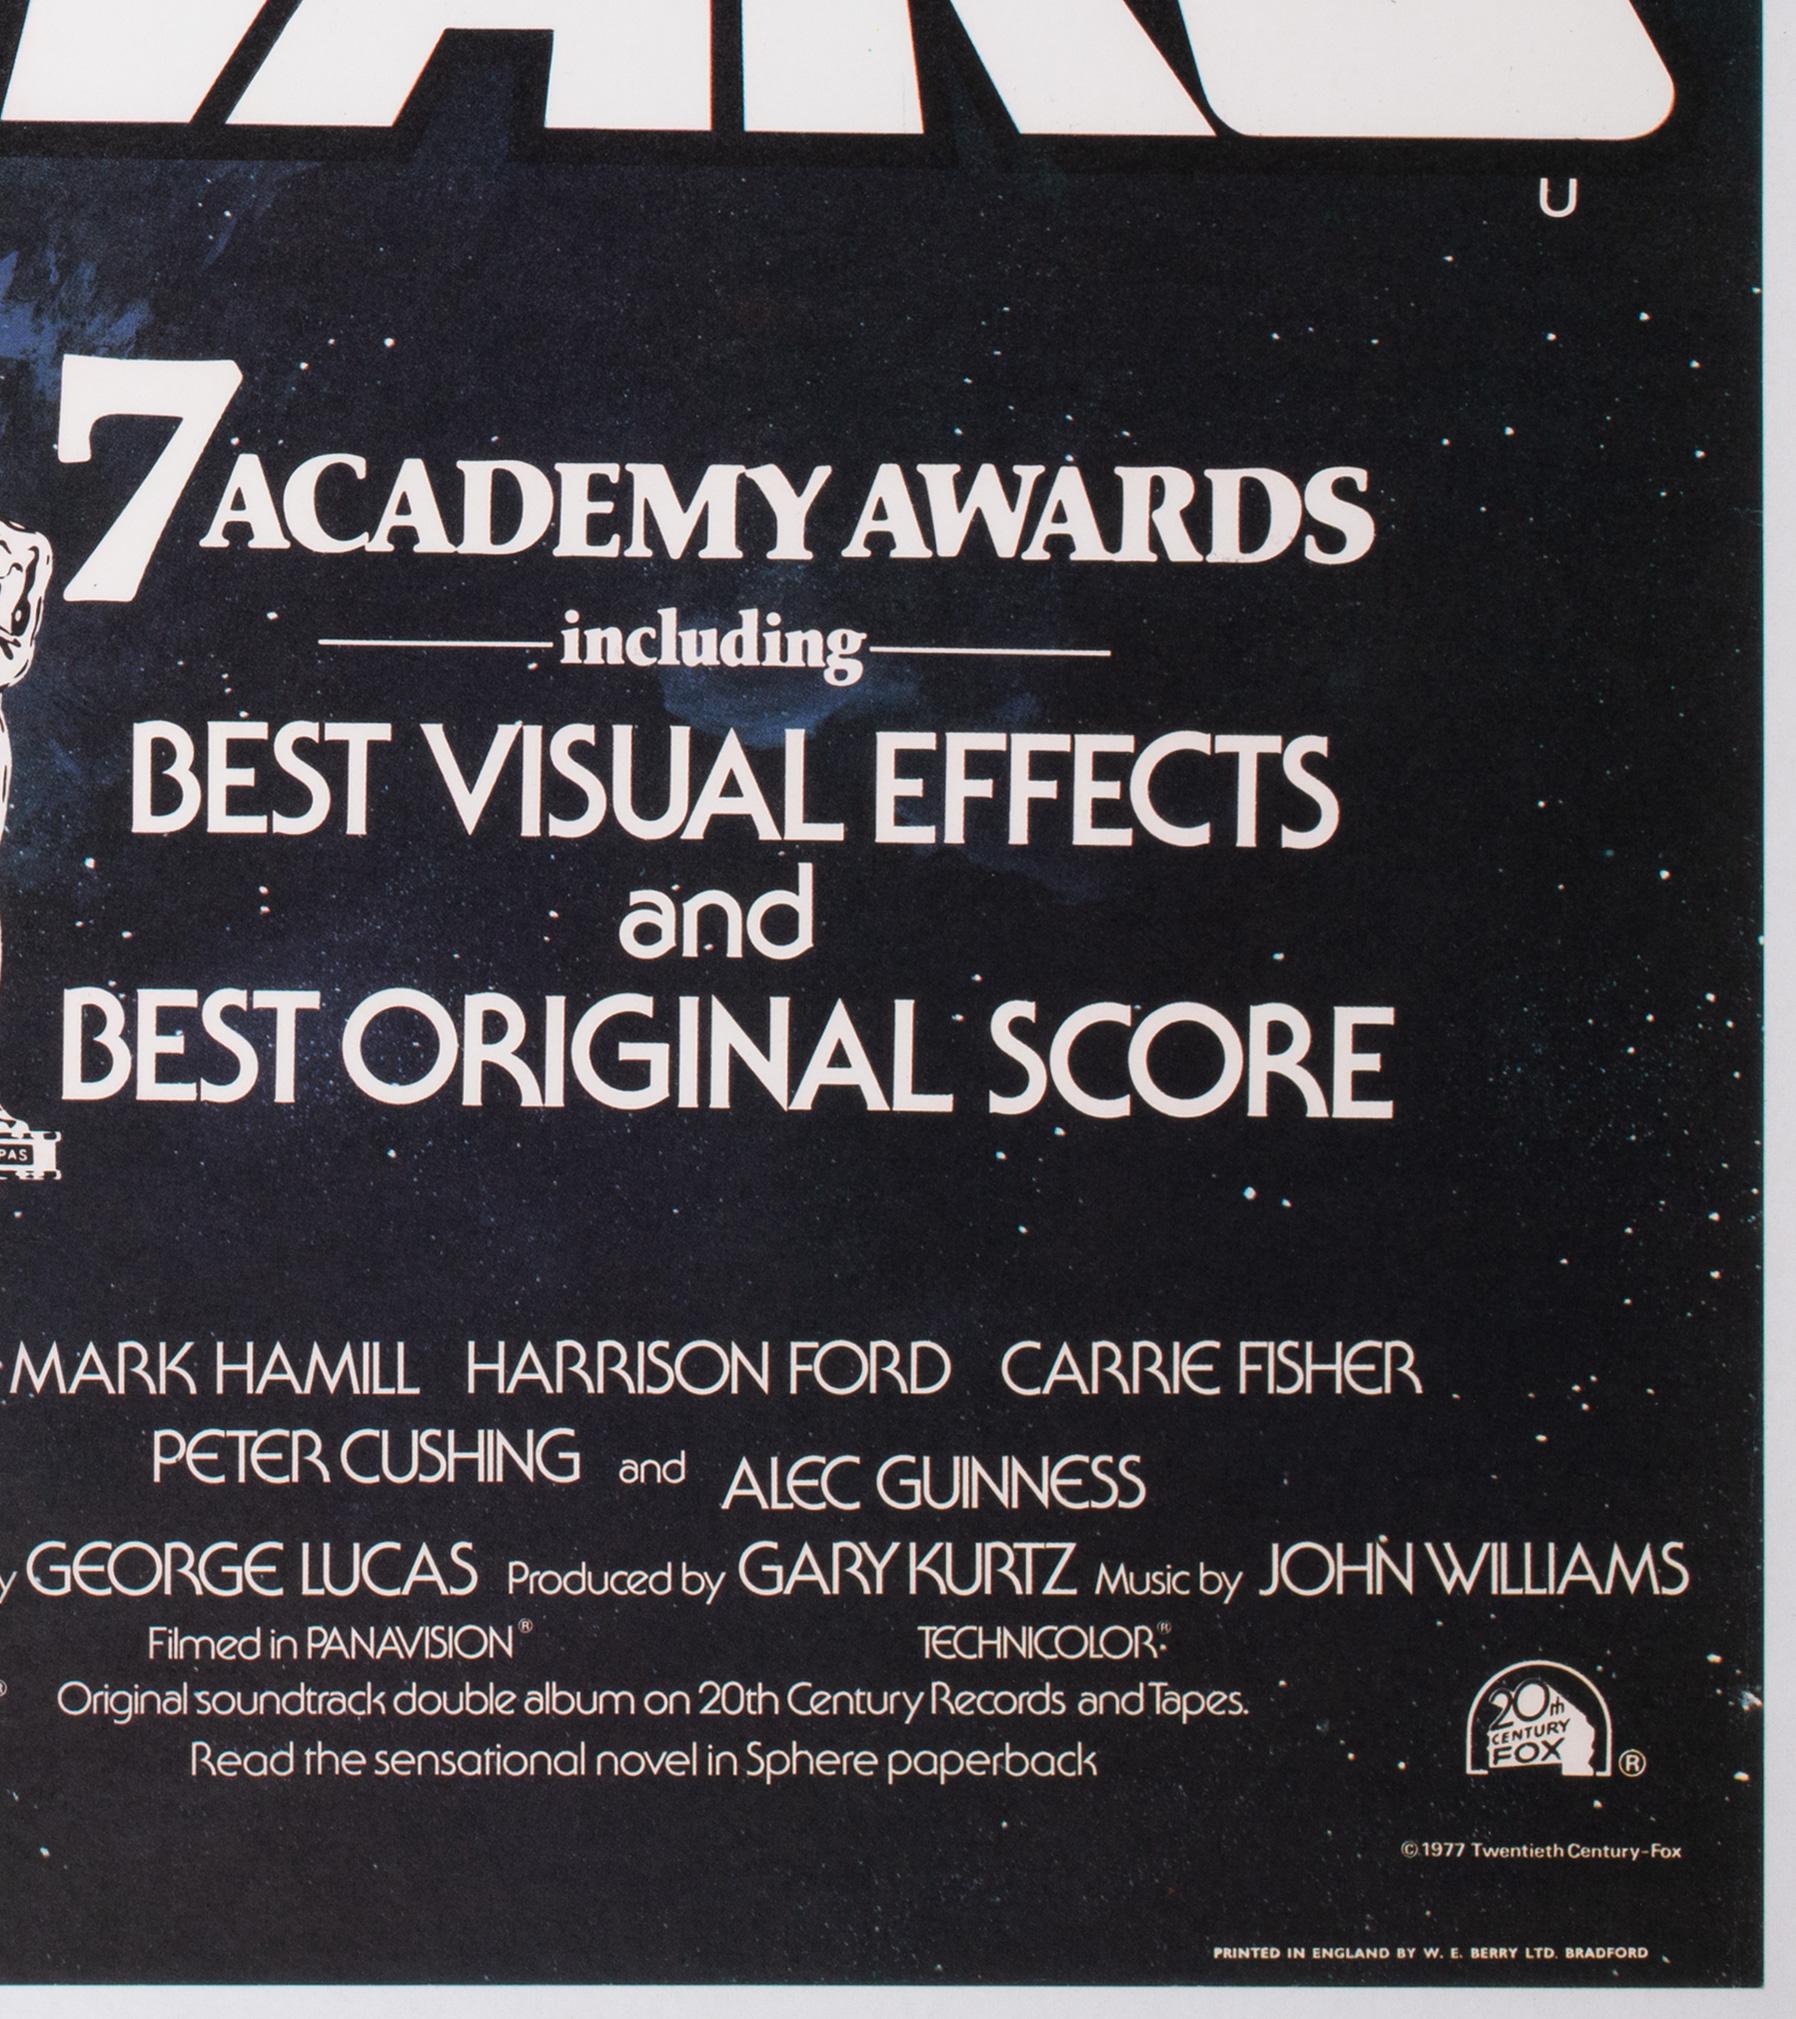 Affiche originale du film Star Wars de 1977, style quadrilobé britannique C Oscars, Chantrell 3